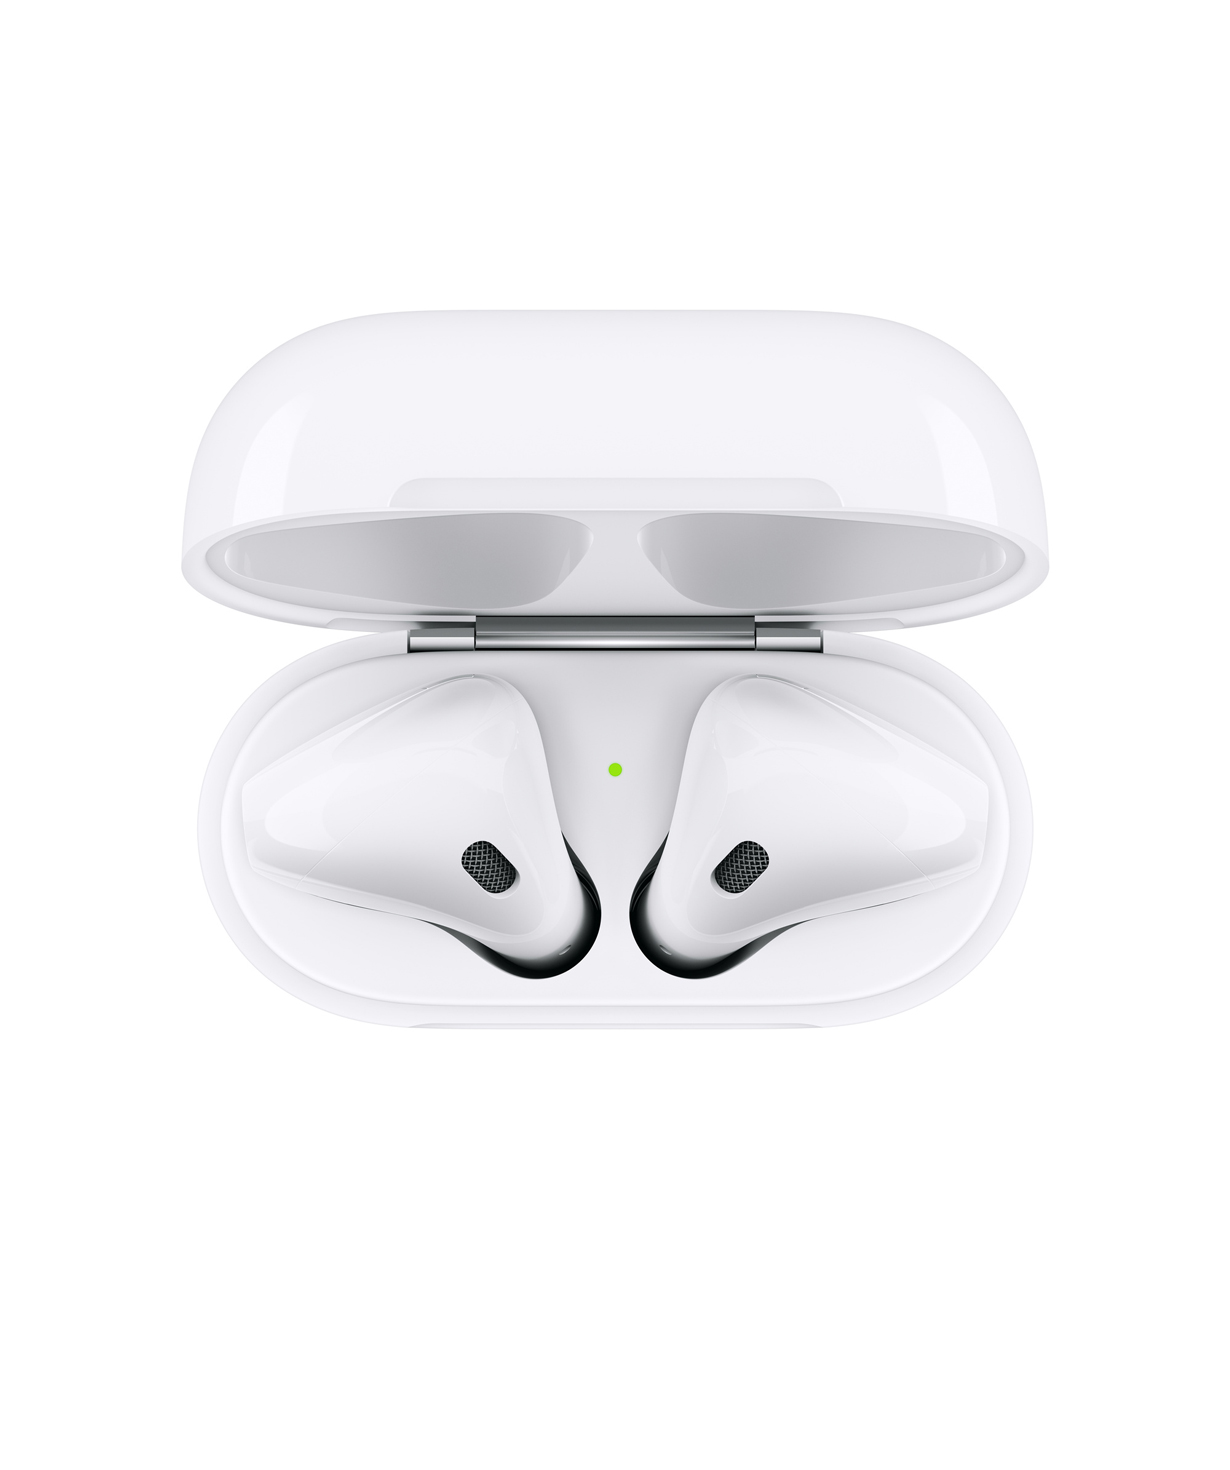 Անլար ականջակալներ «Apple» AirPods 2